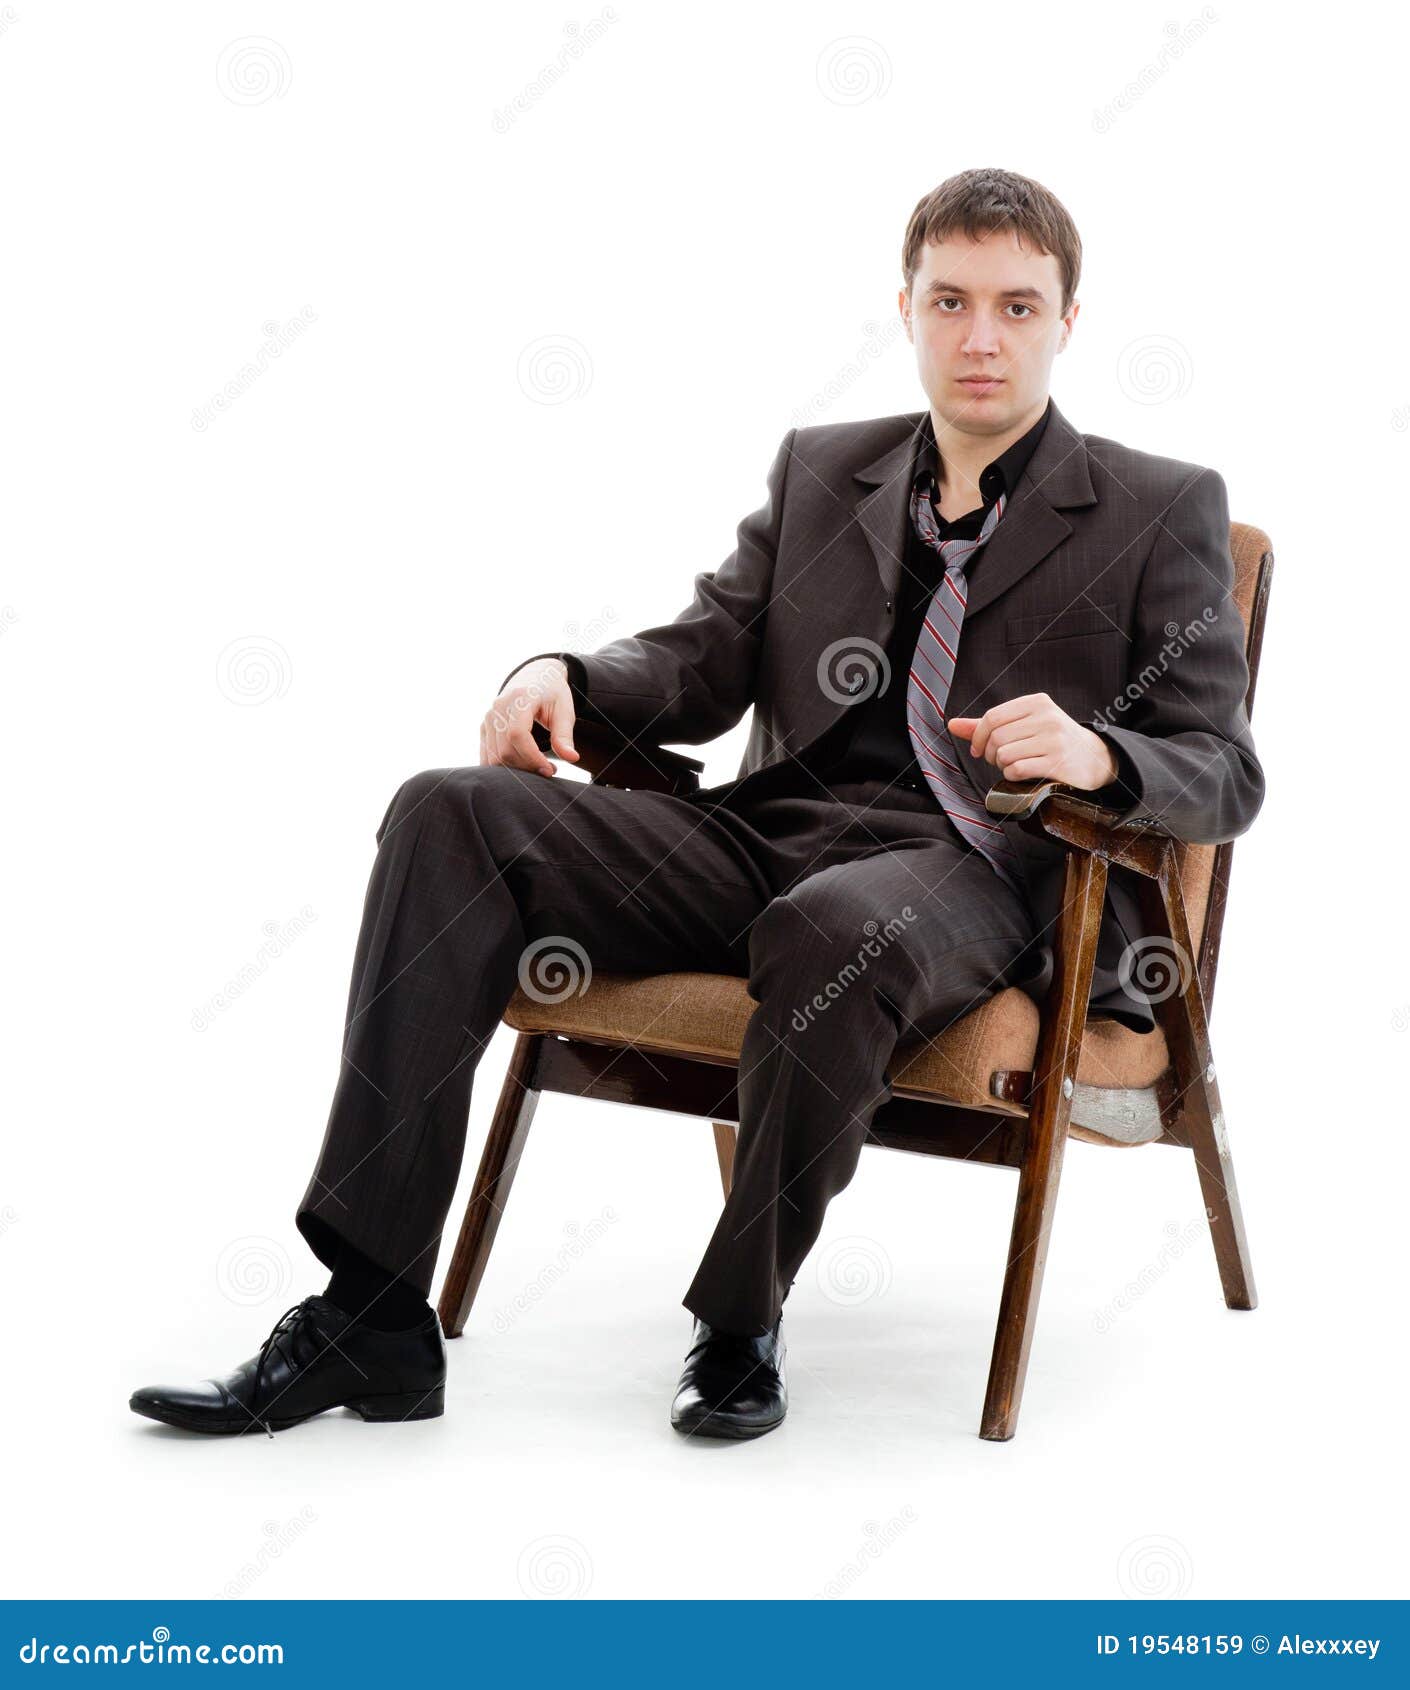 Мужчина сидит раздвинув ноги. Мужчина в кресле. Человек в костюме сидит. Мужчина в кресле в костюме. Человек в костюме сидит на стуле.